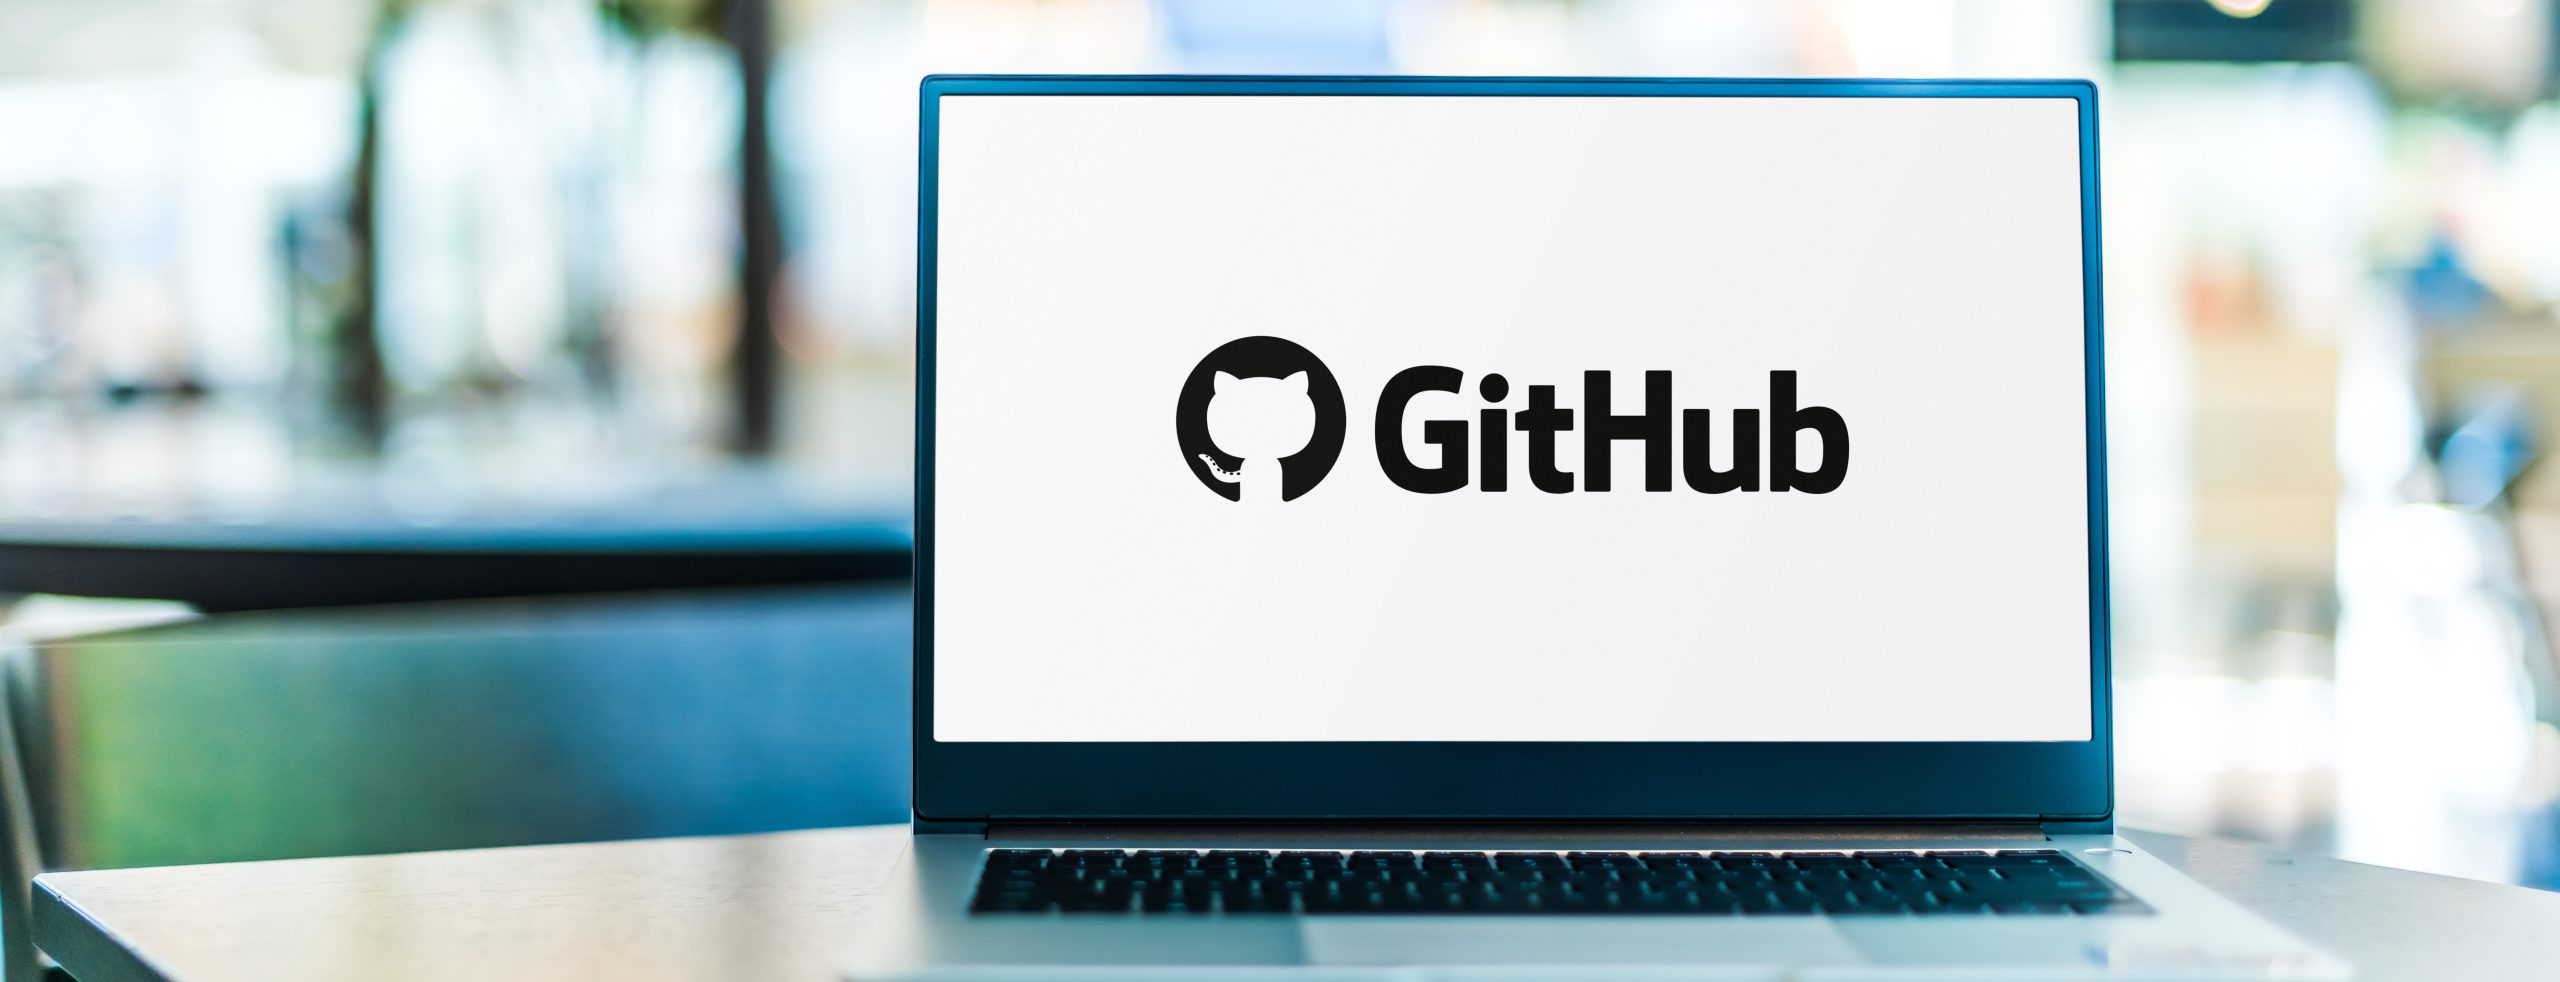 GitHub Allows Tornado Cash Repositories Again
